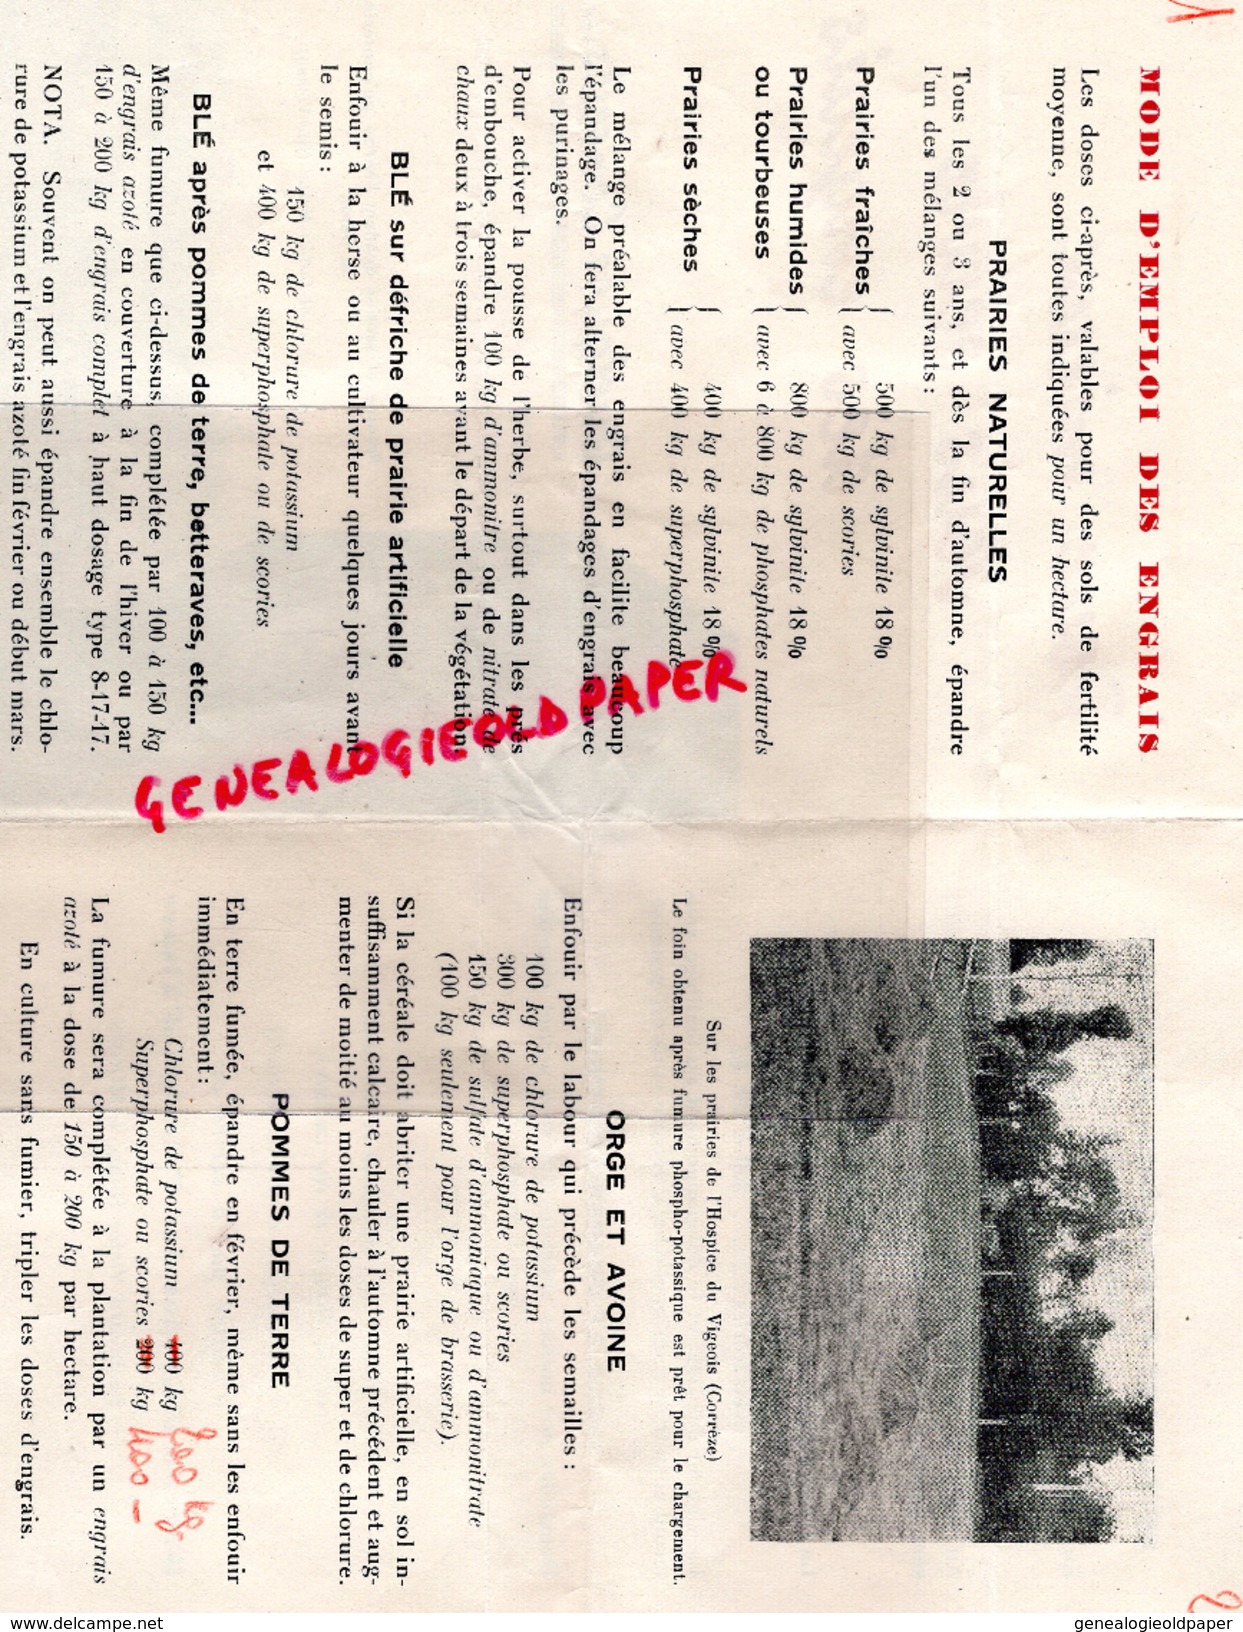 87 -ST SAINT JUST LE MARTEL - PUBLICITE ENGRAIS POTASSE SCORIES -BUREAU ETUDE POTASSES ALSACE -11 BD VICTOR HUGO LIMOGES - 1950 - ...